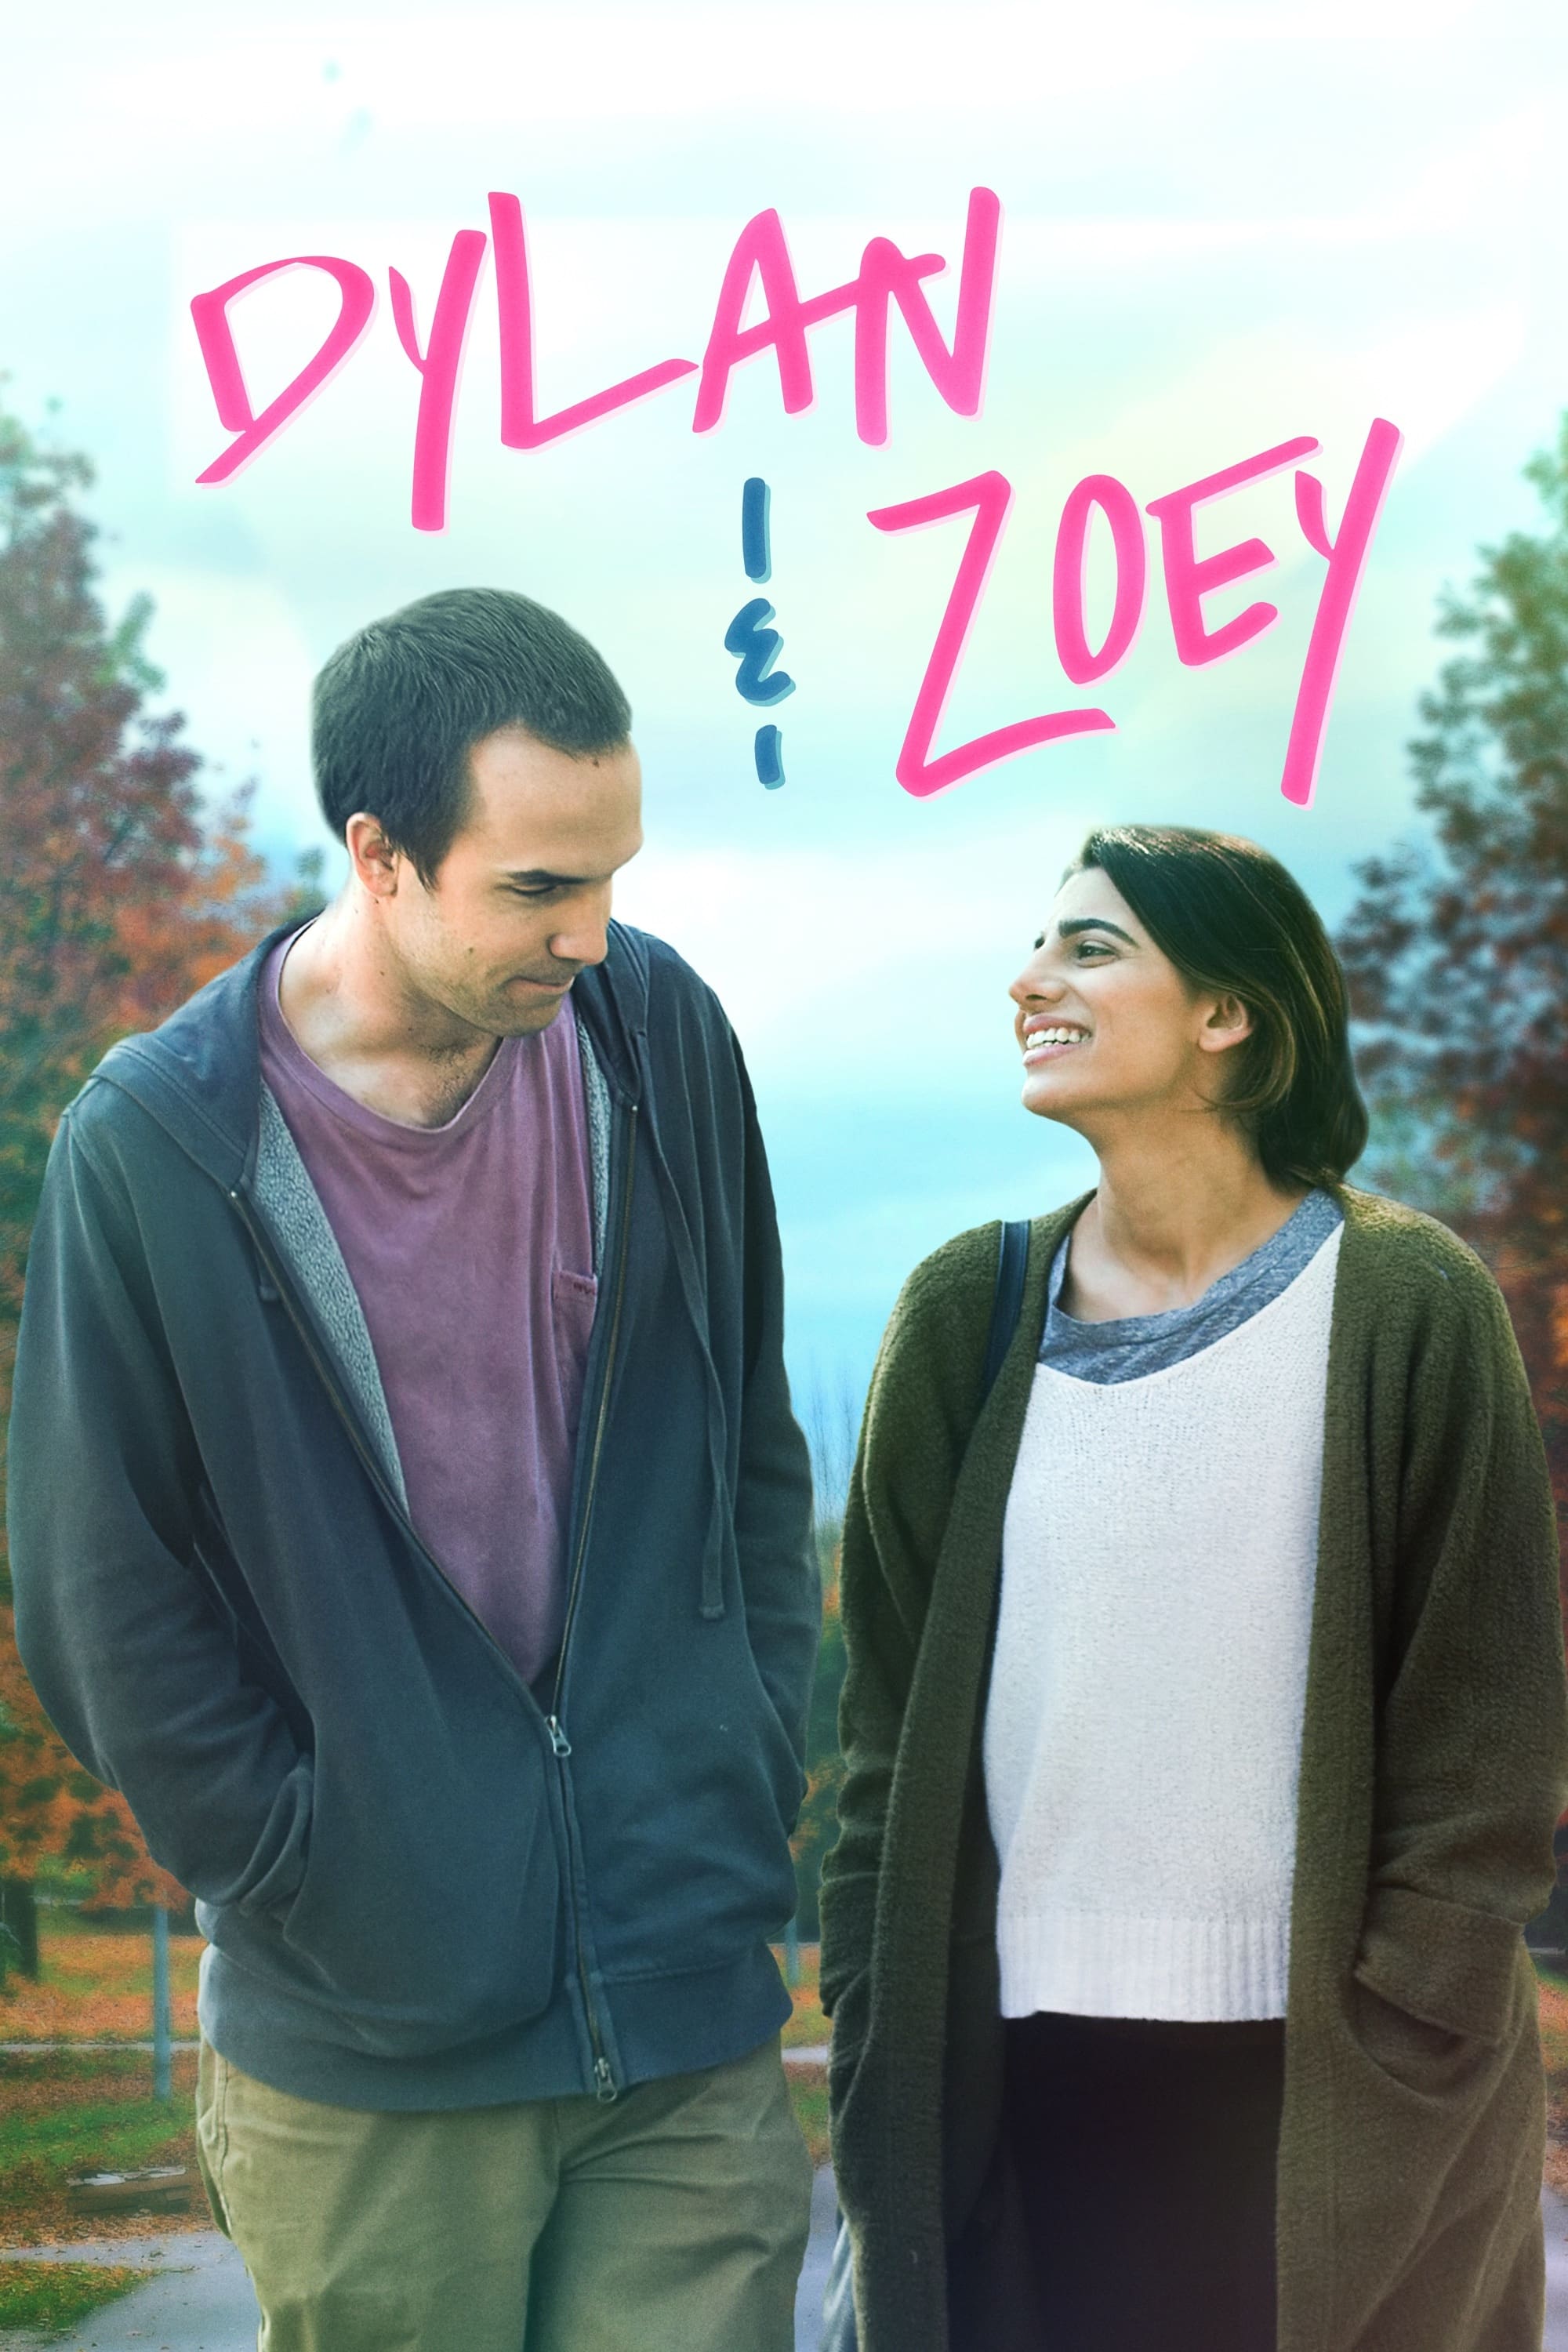 Dylan & Zoey постер